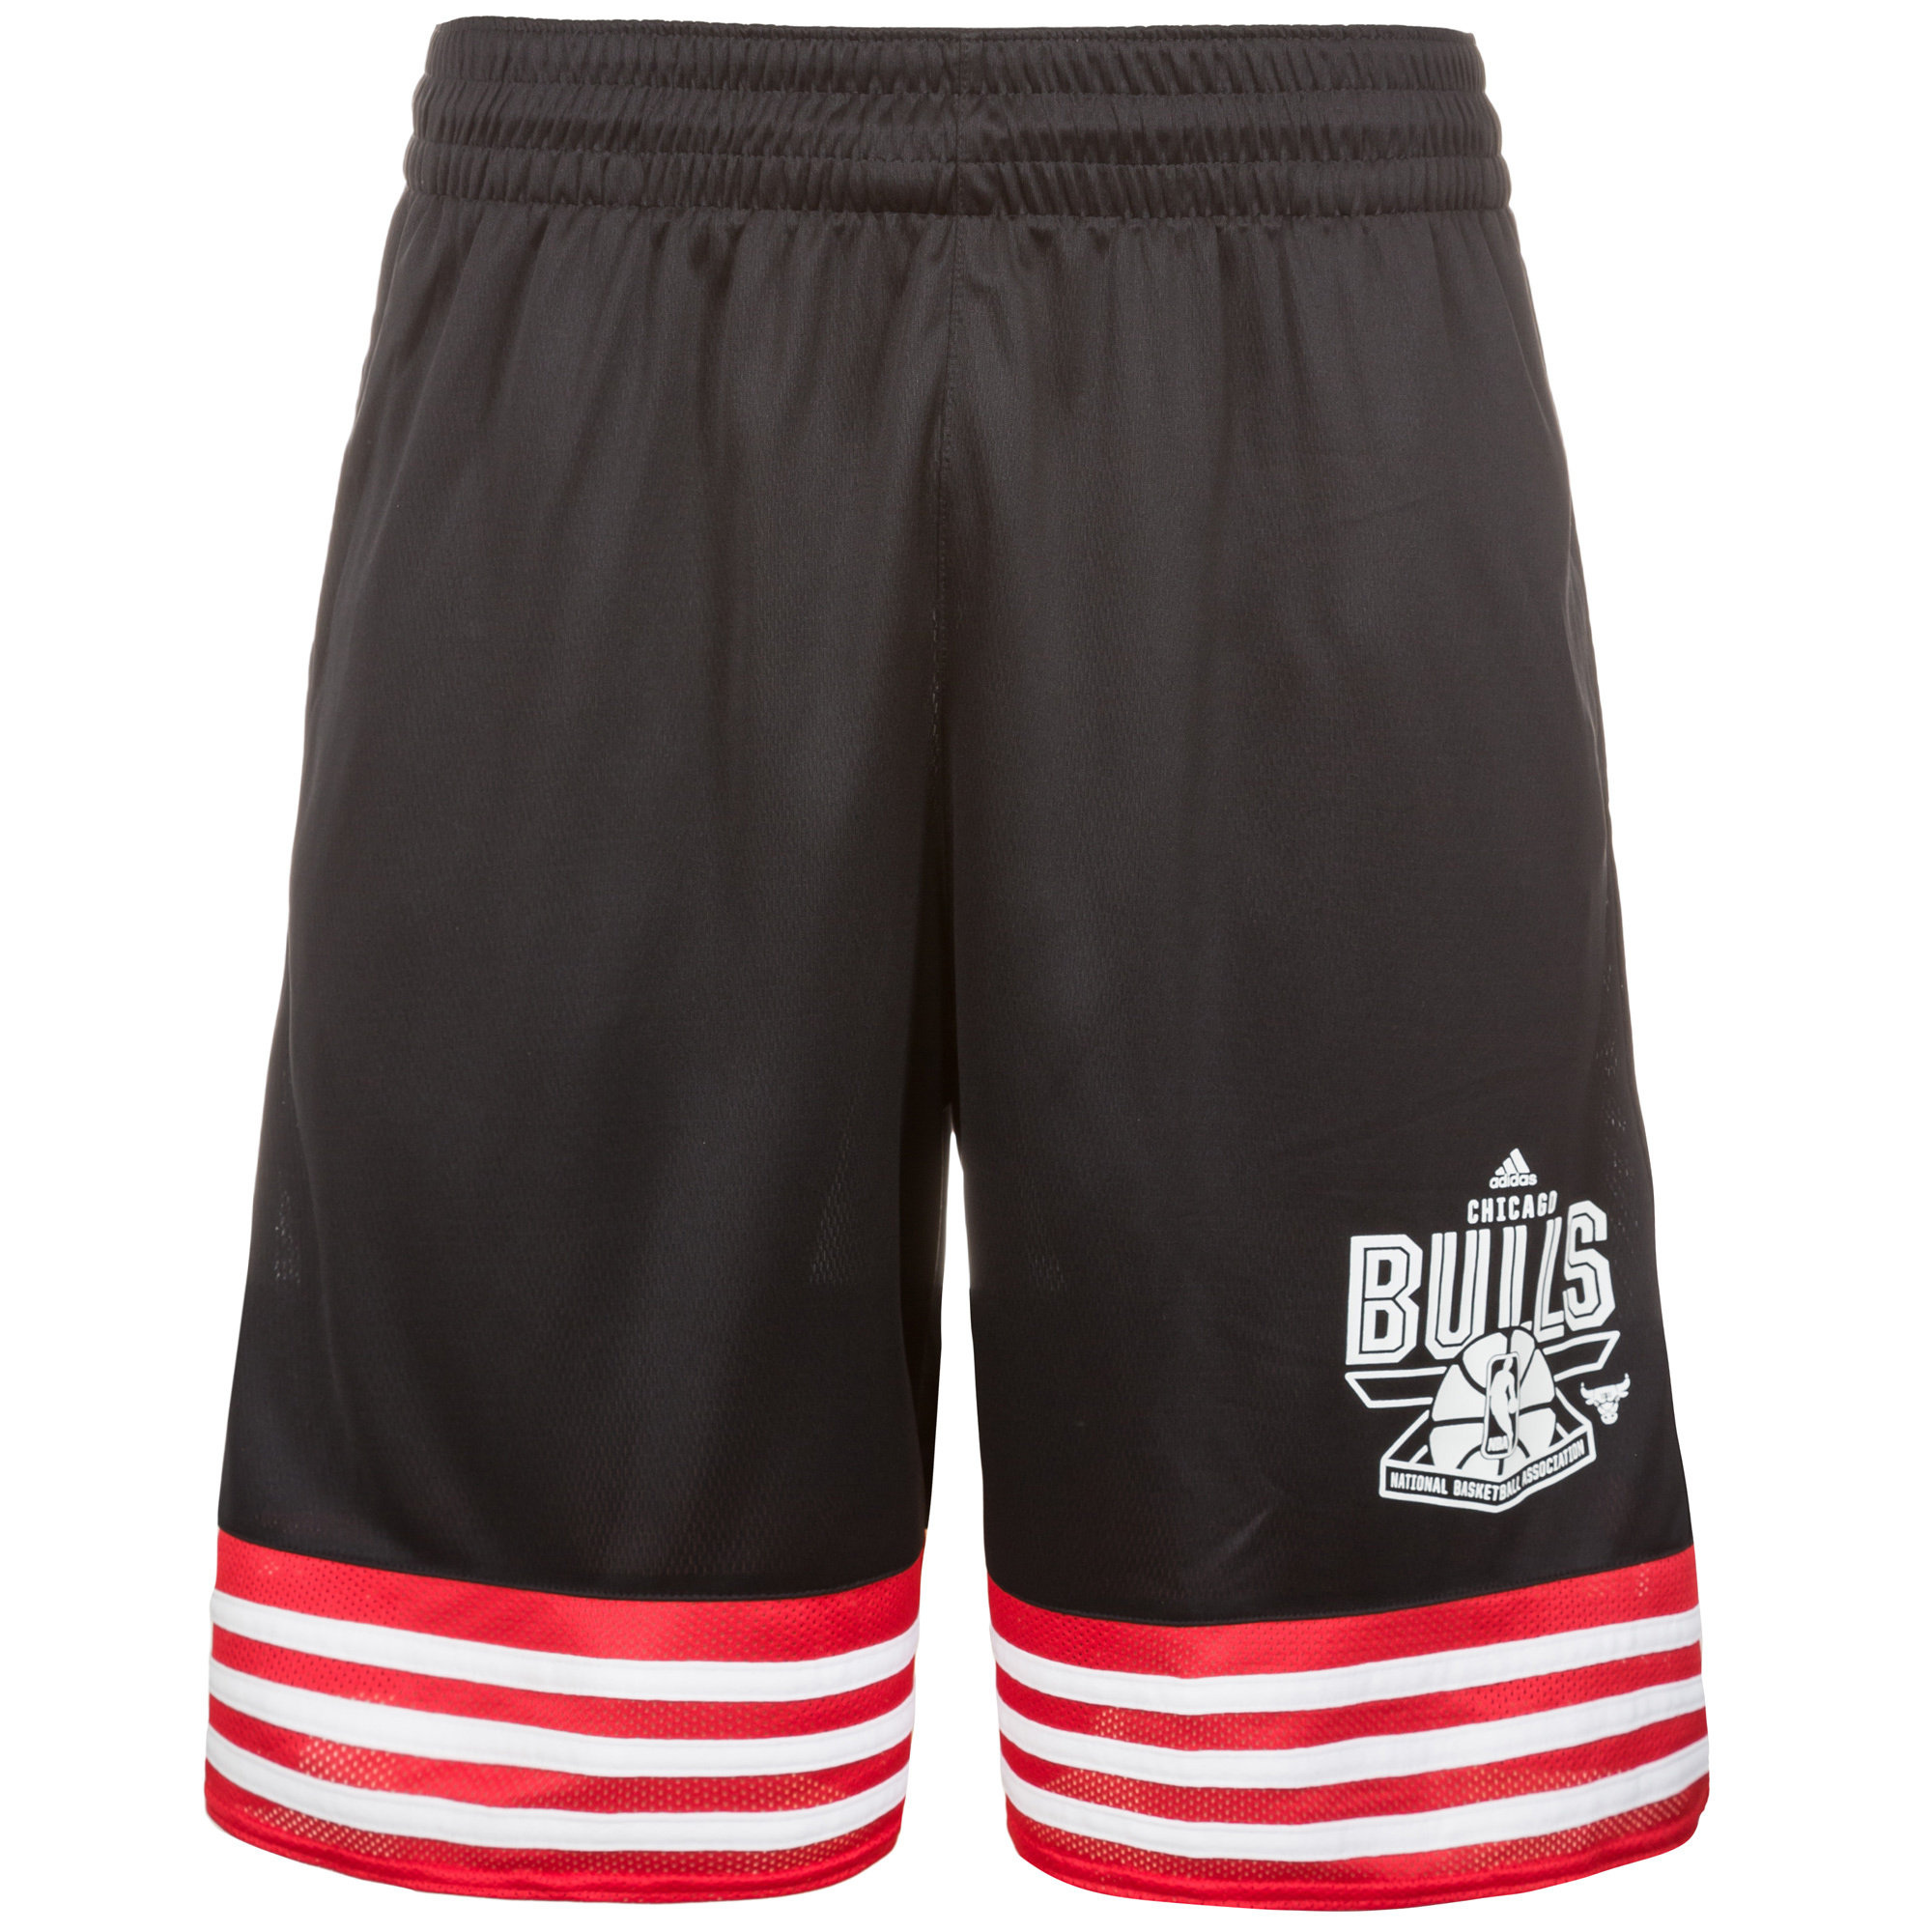 Adidas Short NBA Chicago Bulls Price Point Negro Rojo Blanco